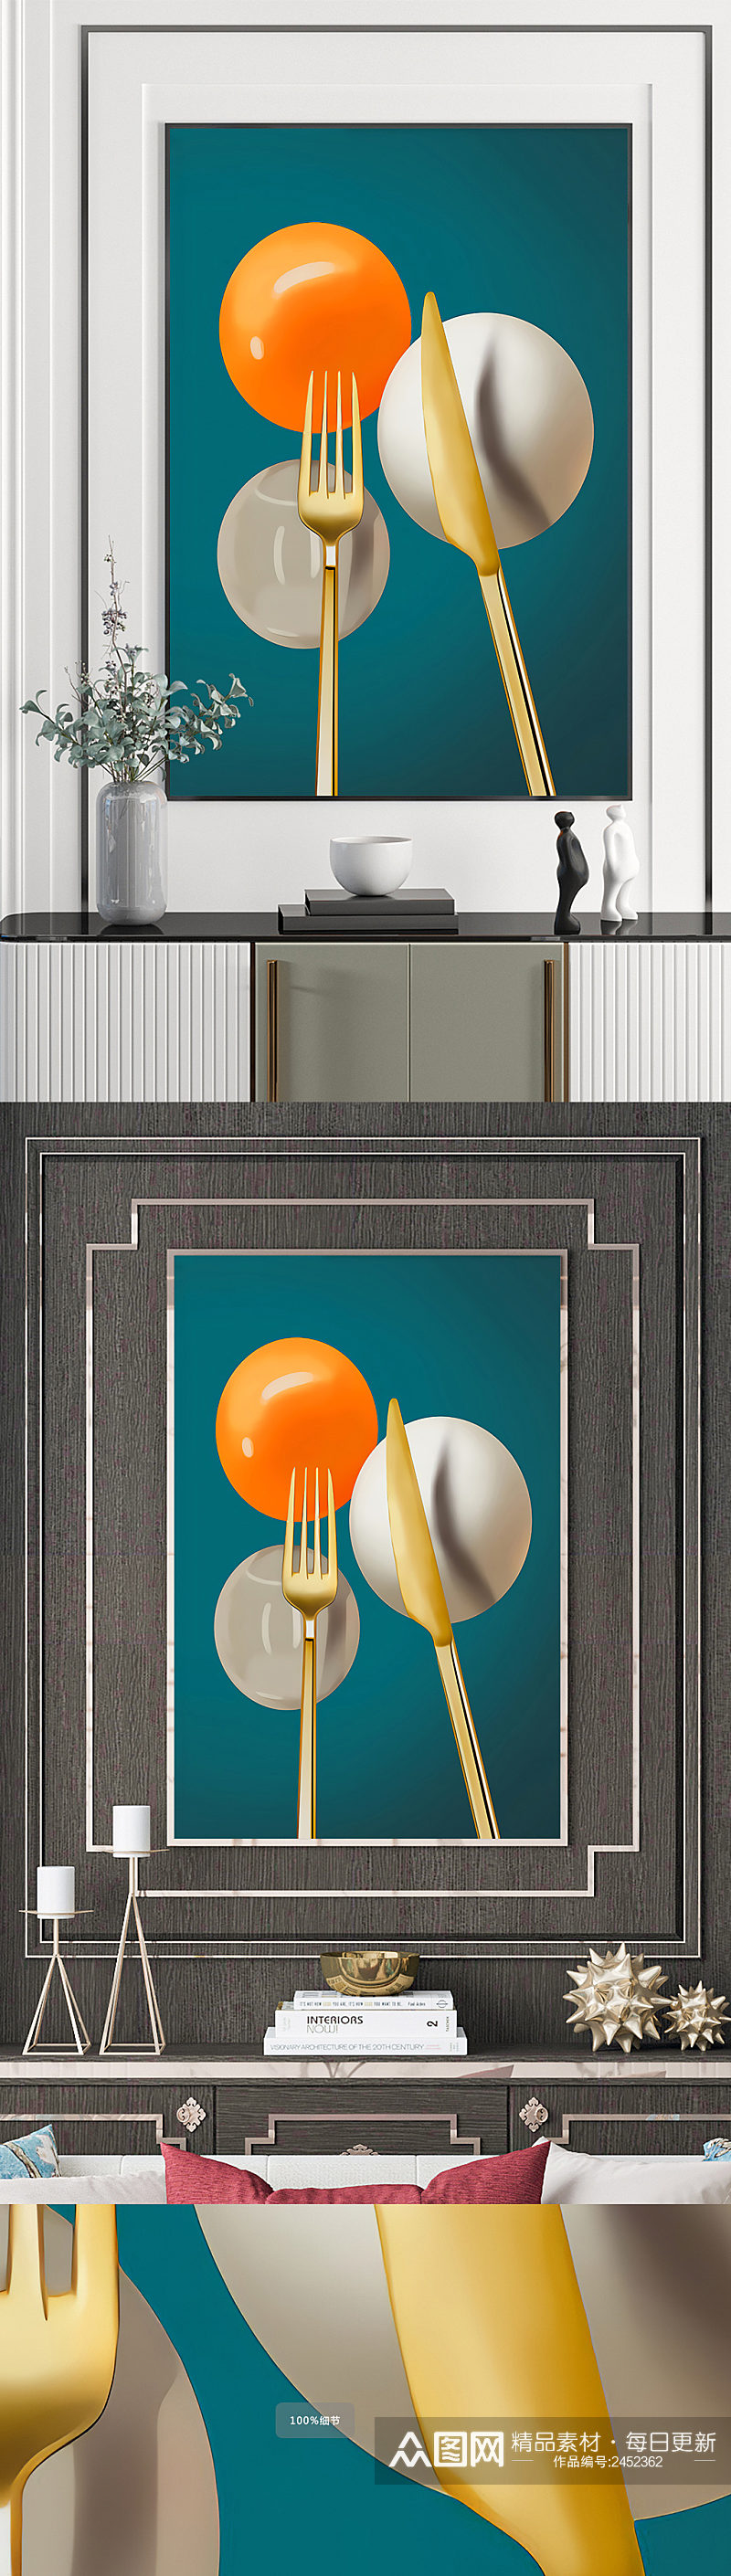 餐具刀叉气球装饰画素材